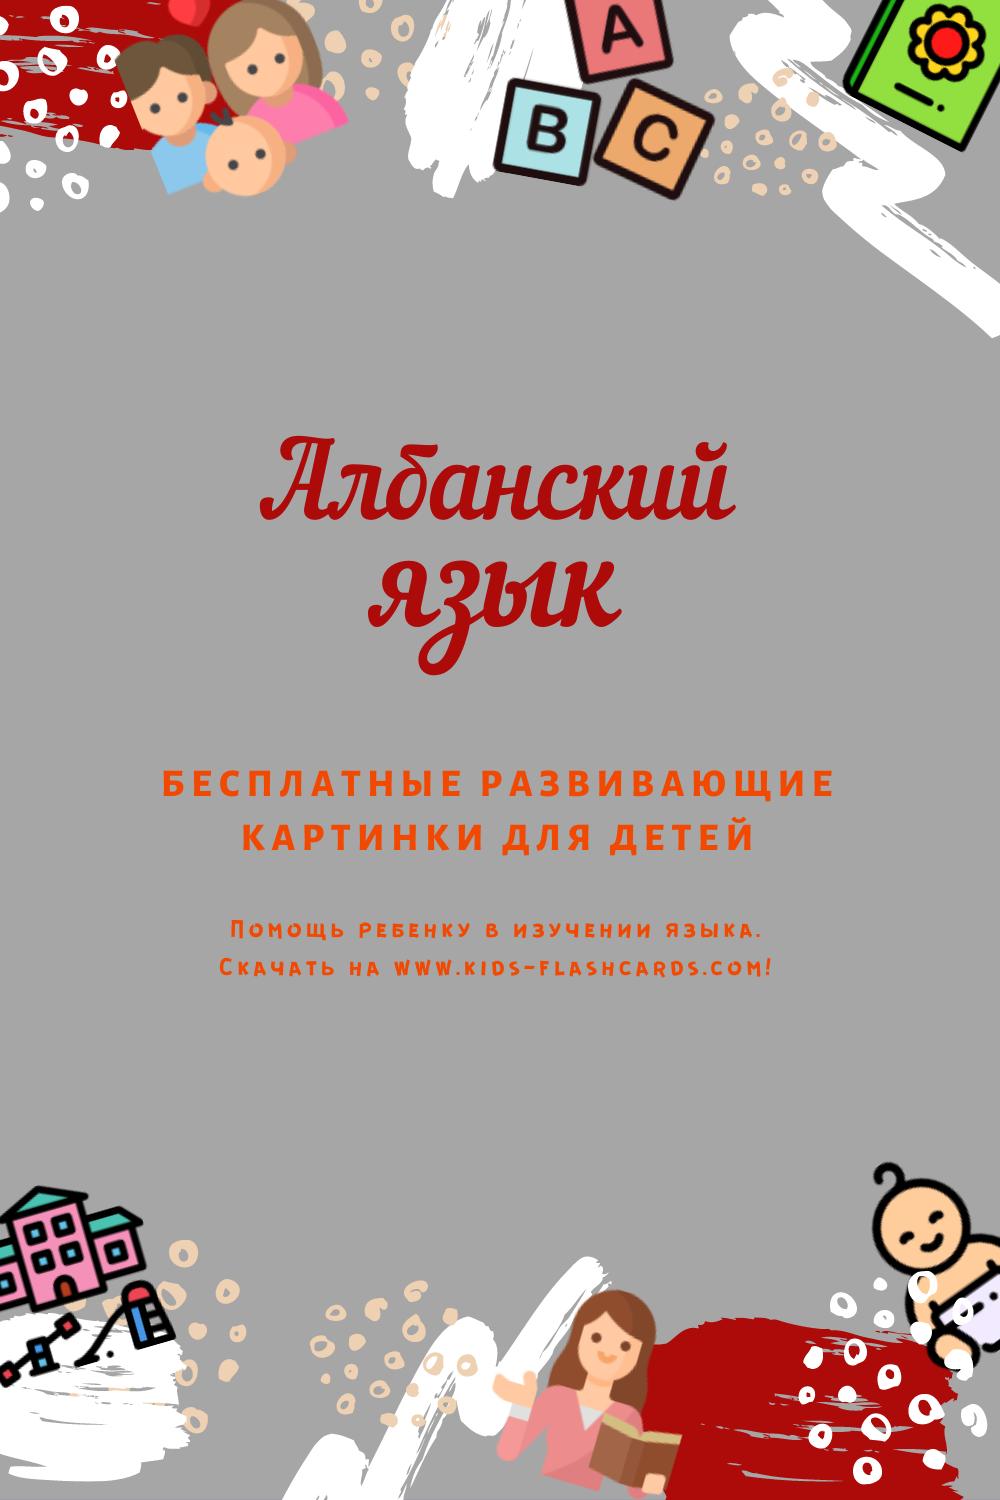 Албанский язык - бесплатные материалы для печати